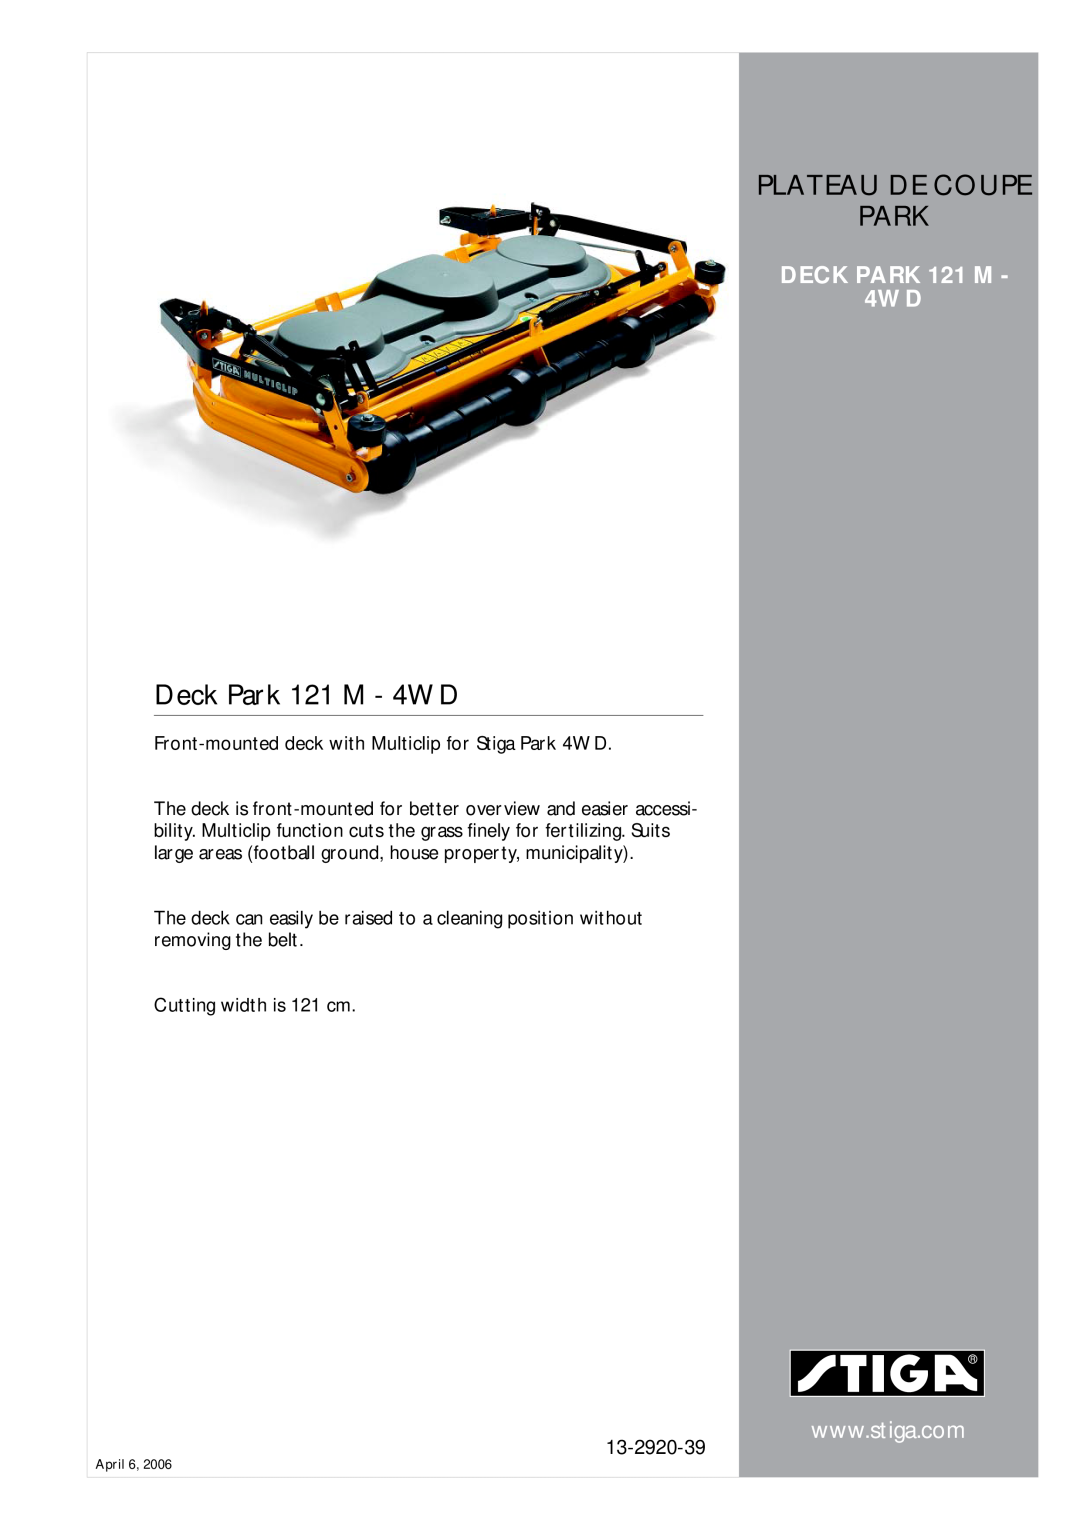 Stiga manual Deck Park 121 M - 4WD, Plateau De Coupe Park, DECK PARK 121 M 4WD, 13-2920-39 